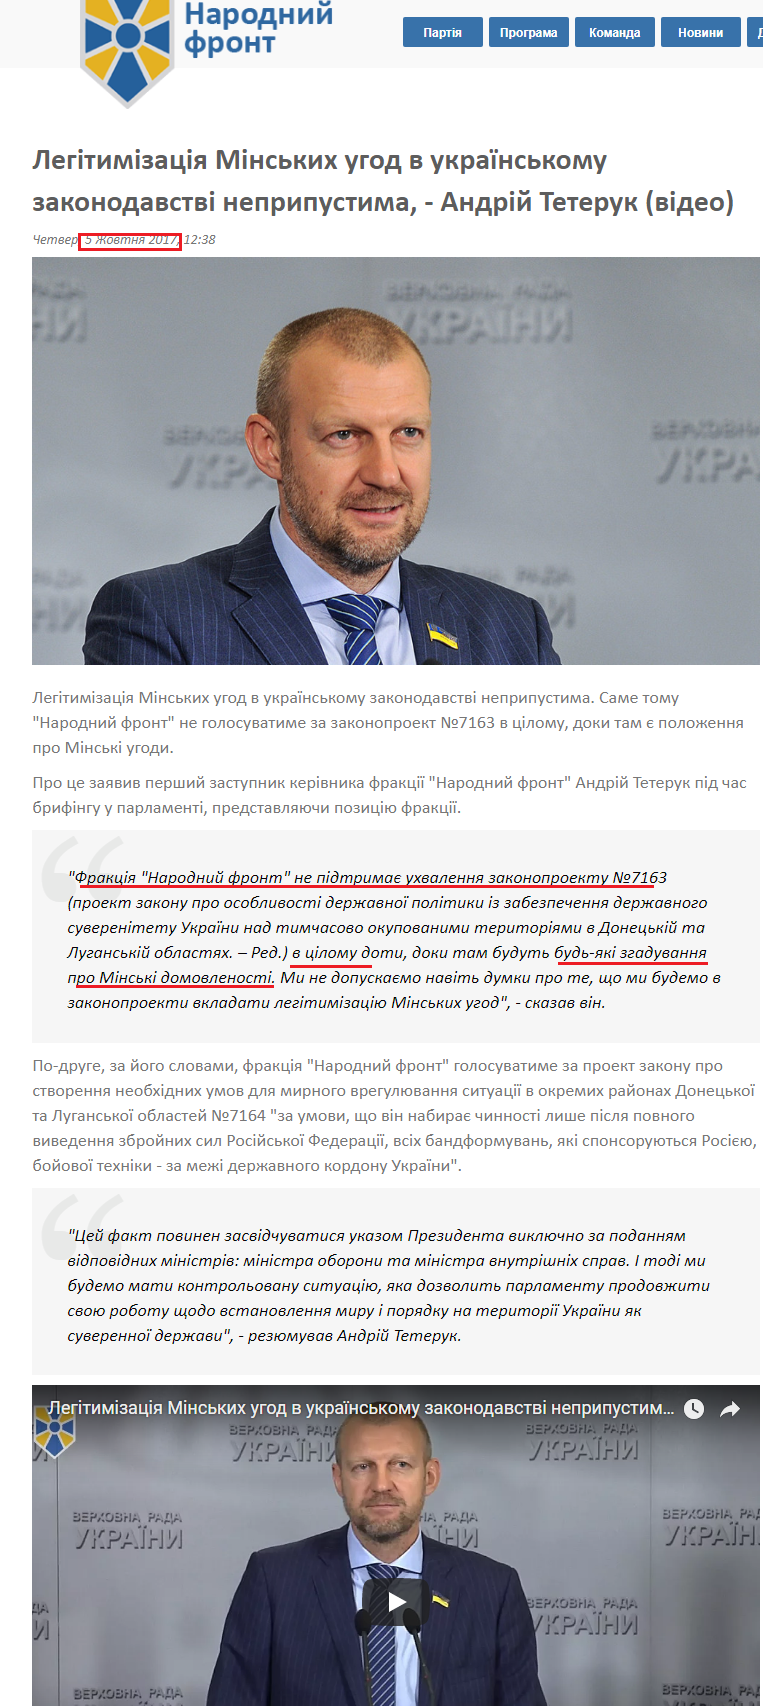 http://nfront.org.ua/news/details/legitimizaciya-minskih-ugod-v-ukrayinskomu-zakonodavstvi-nepripustima-andrij-teteruk